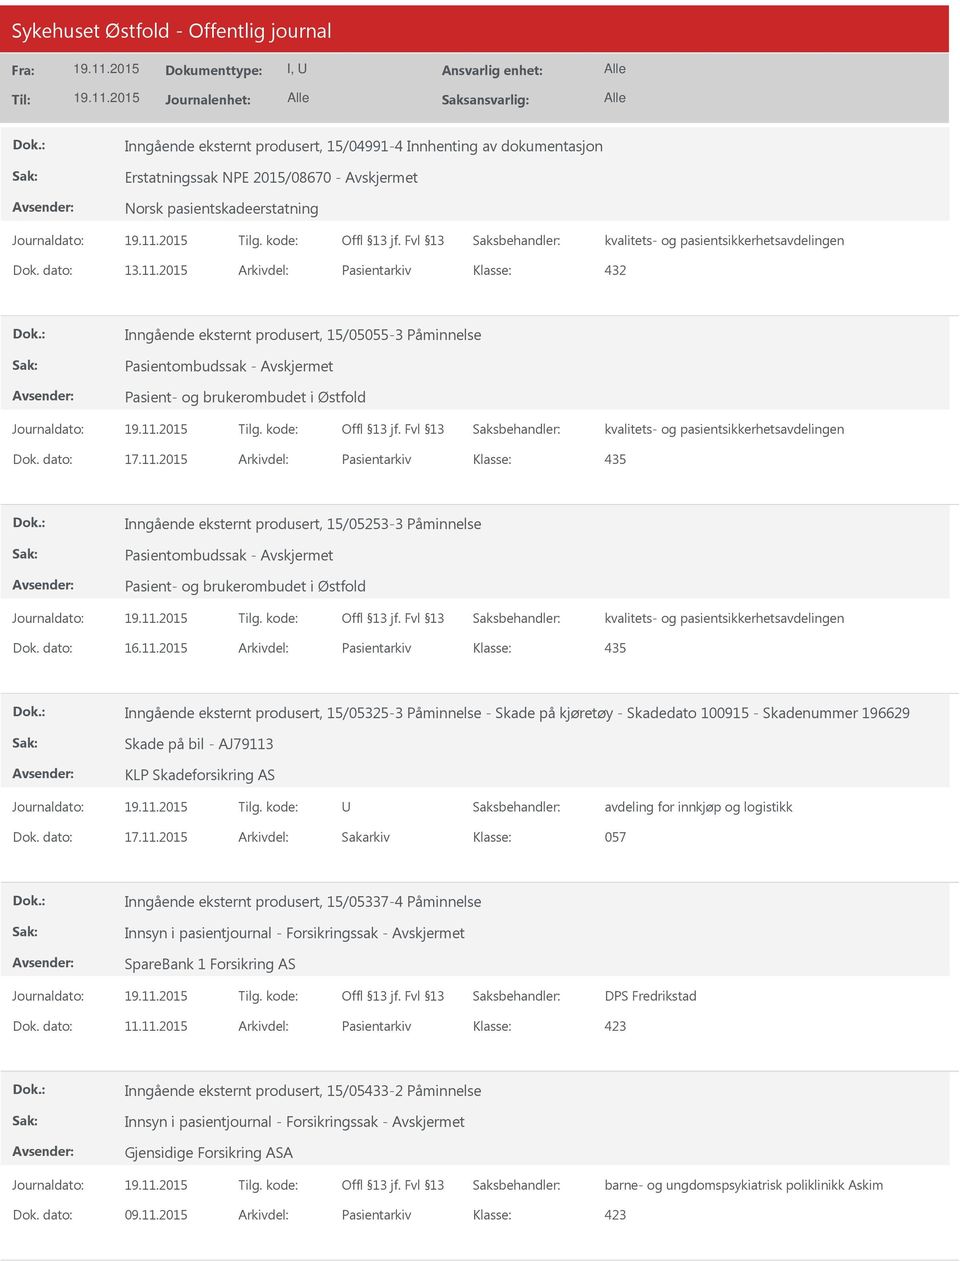 2015 Arkivdel: Pasientarkiv 435 Inngående eksternt produsert, 15/05253-3 Påminnelse Pasientombudssak - Avskjermet Pasient- og brukerombudet i Østfold Dok. dato: 16.11.